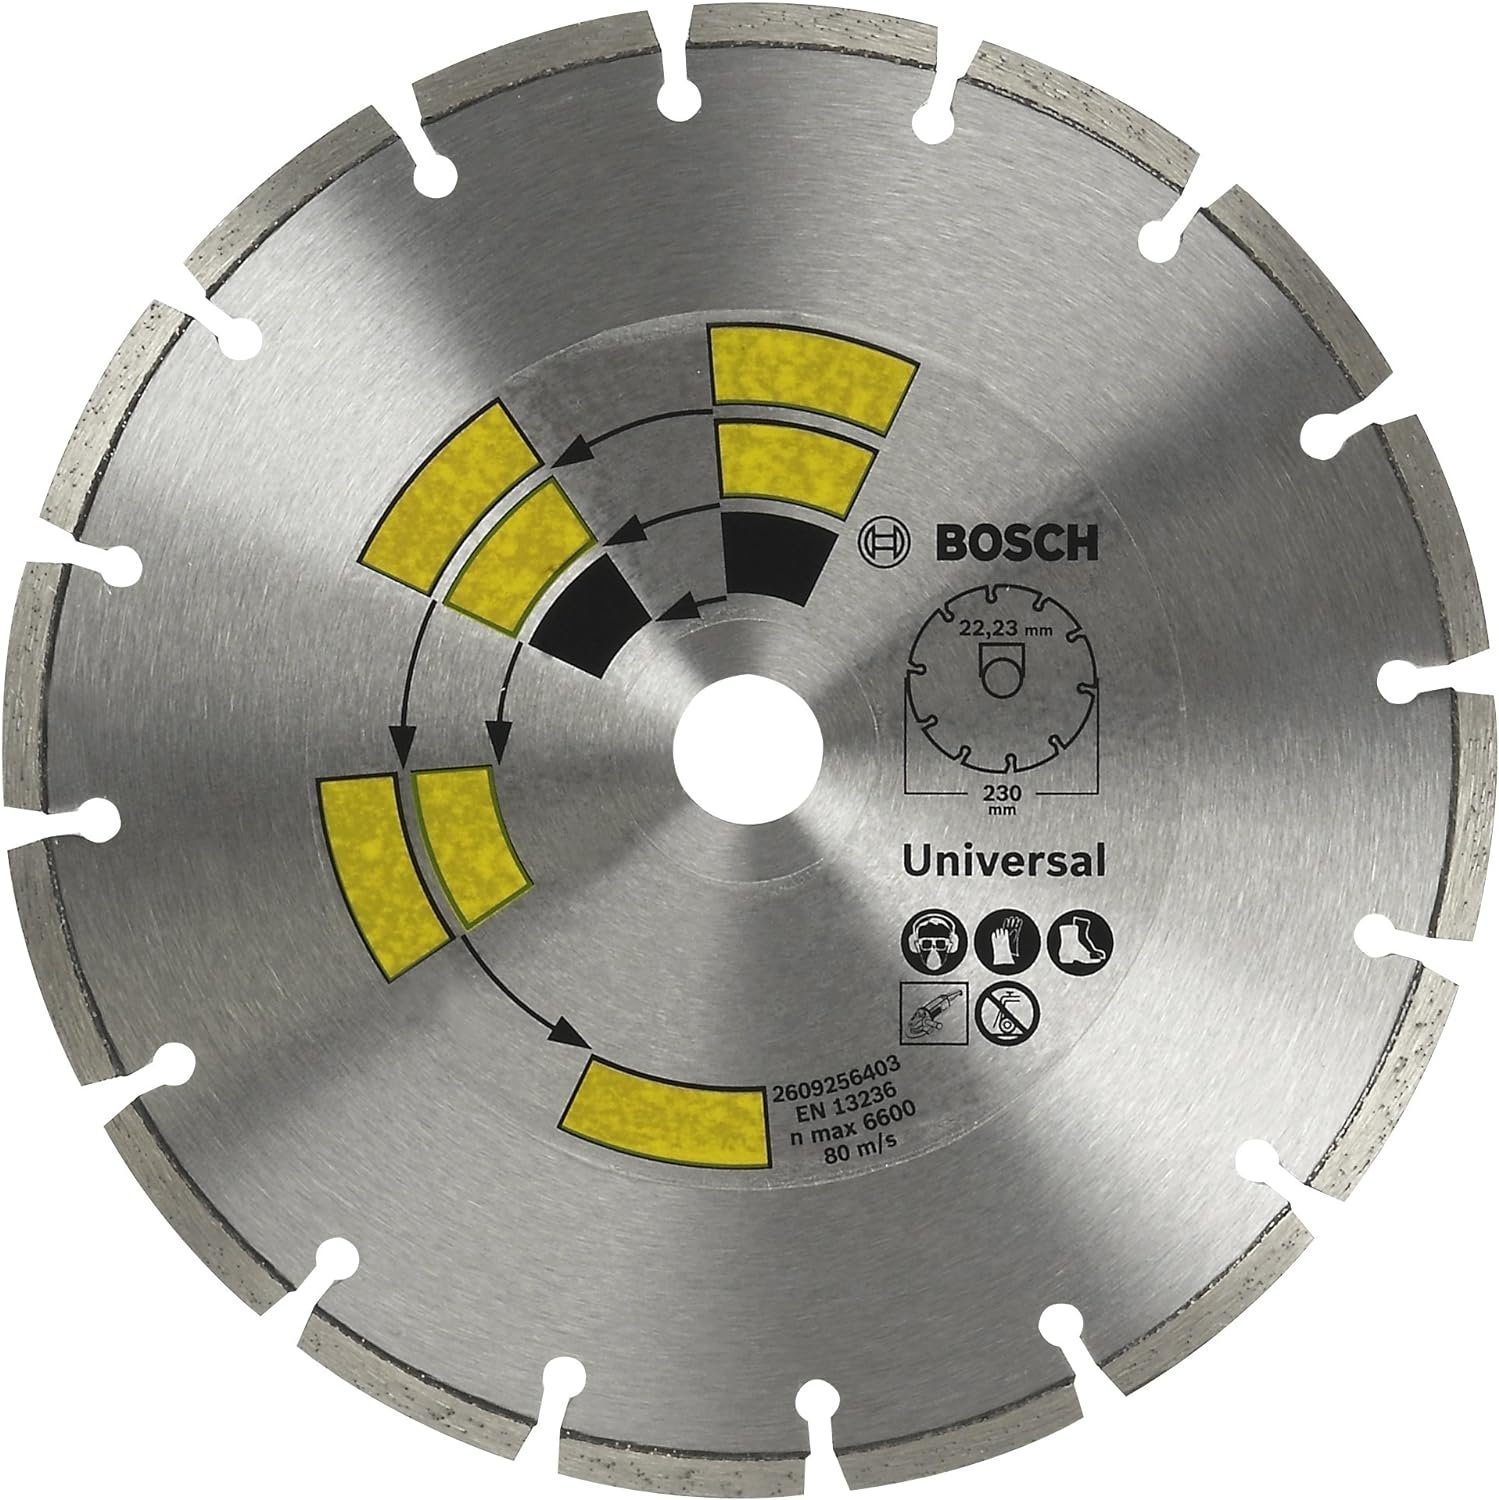 BOSCH Bohrfutter Bosch 2609256403 Diamanttrennscheibe Universal Turbo Top Allzweck